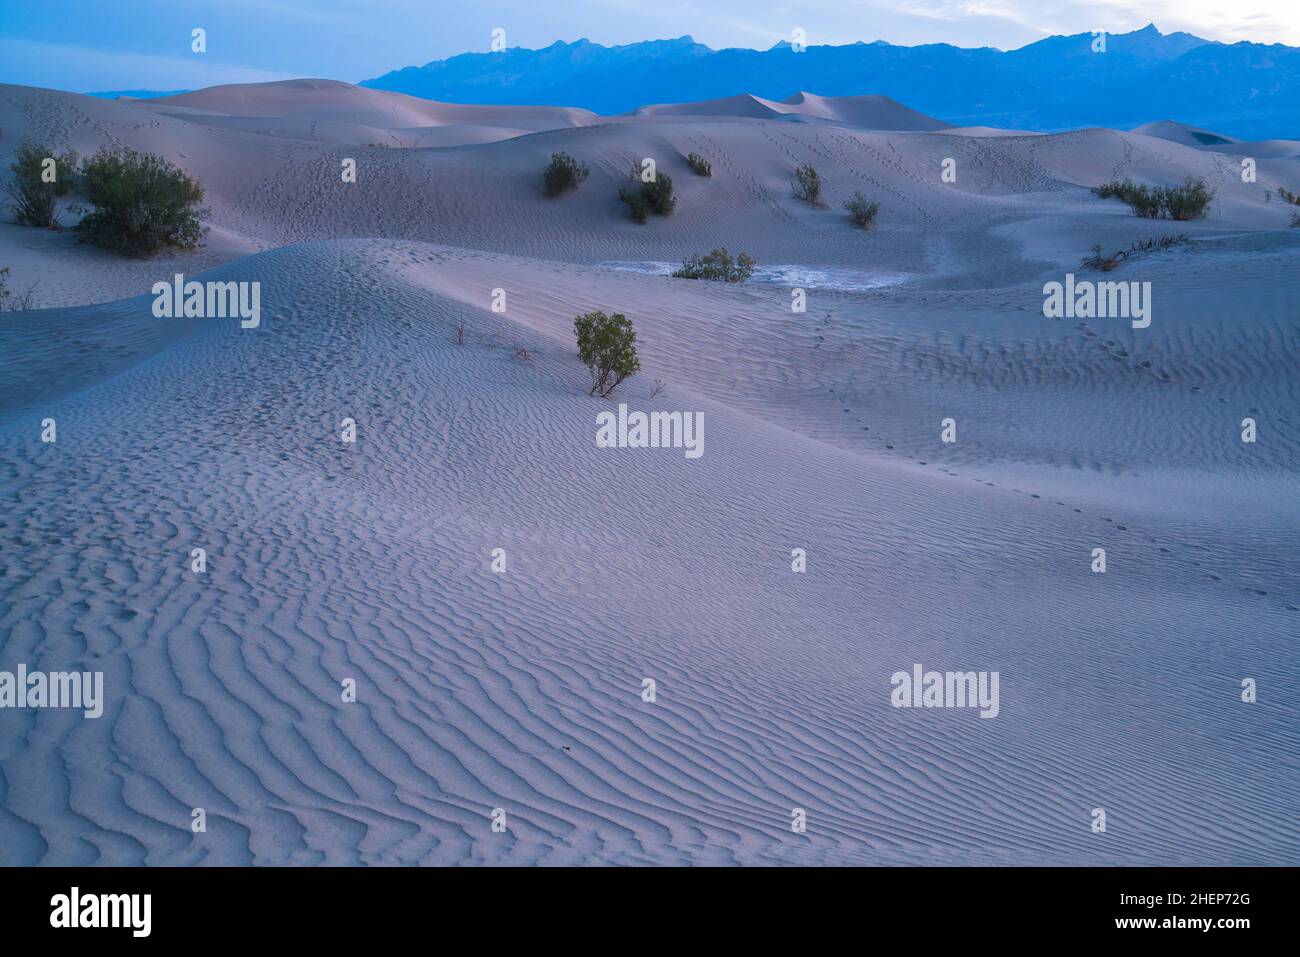 Magnifique paysage de dunes de sable mésand Flat. Parc national de Death Valley, Californie, États-Unis. Banque D'Images